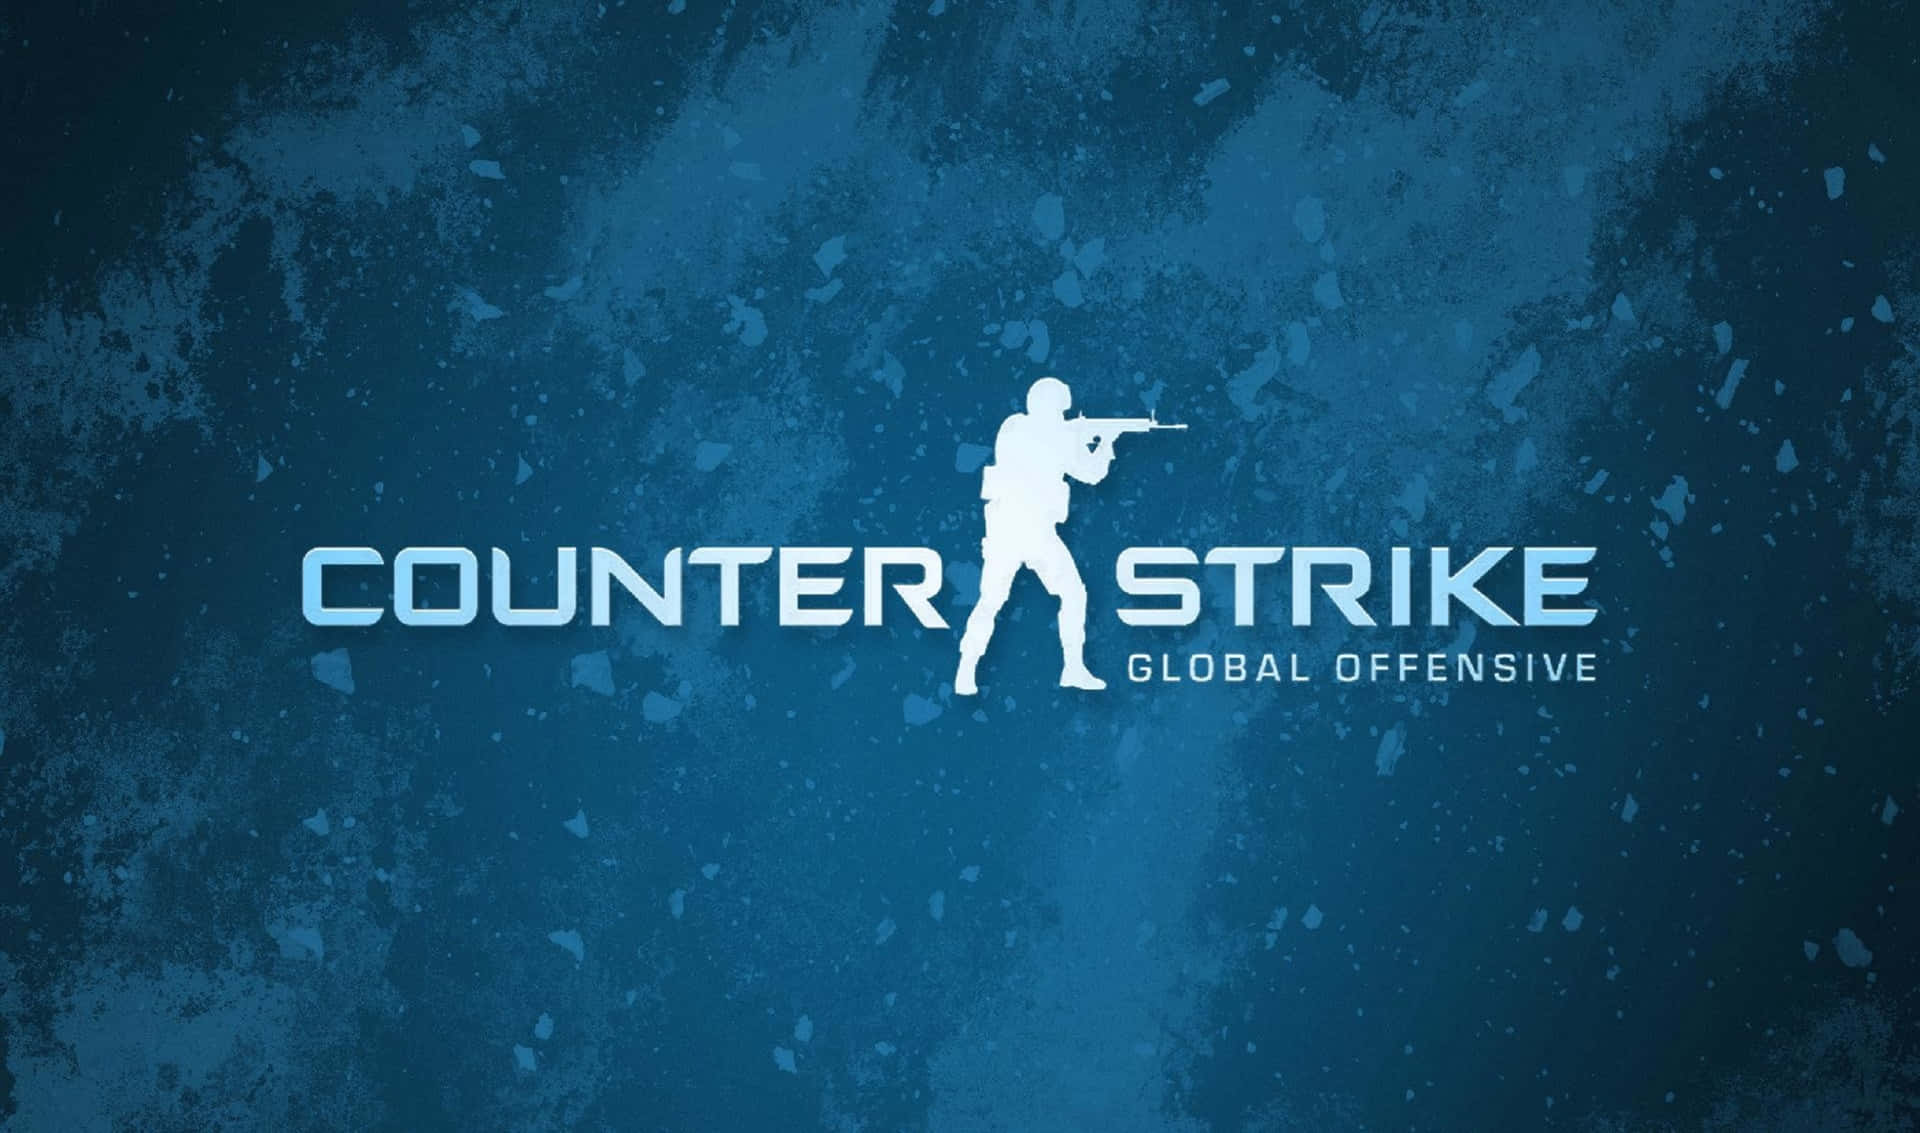 Professionellespieler Kämpfen Intensiv In Counter-strike Global Offensive.